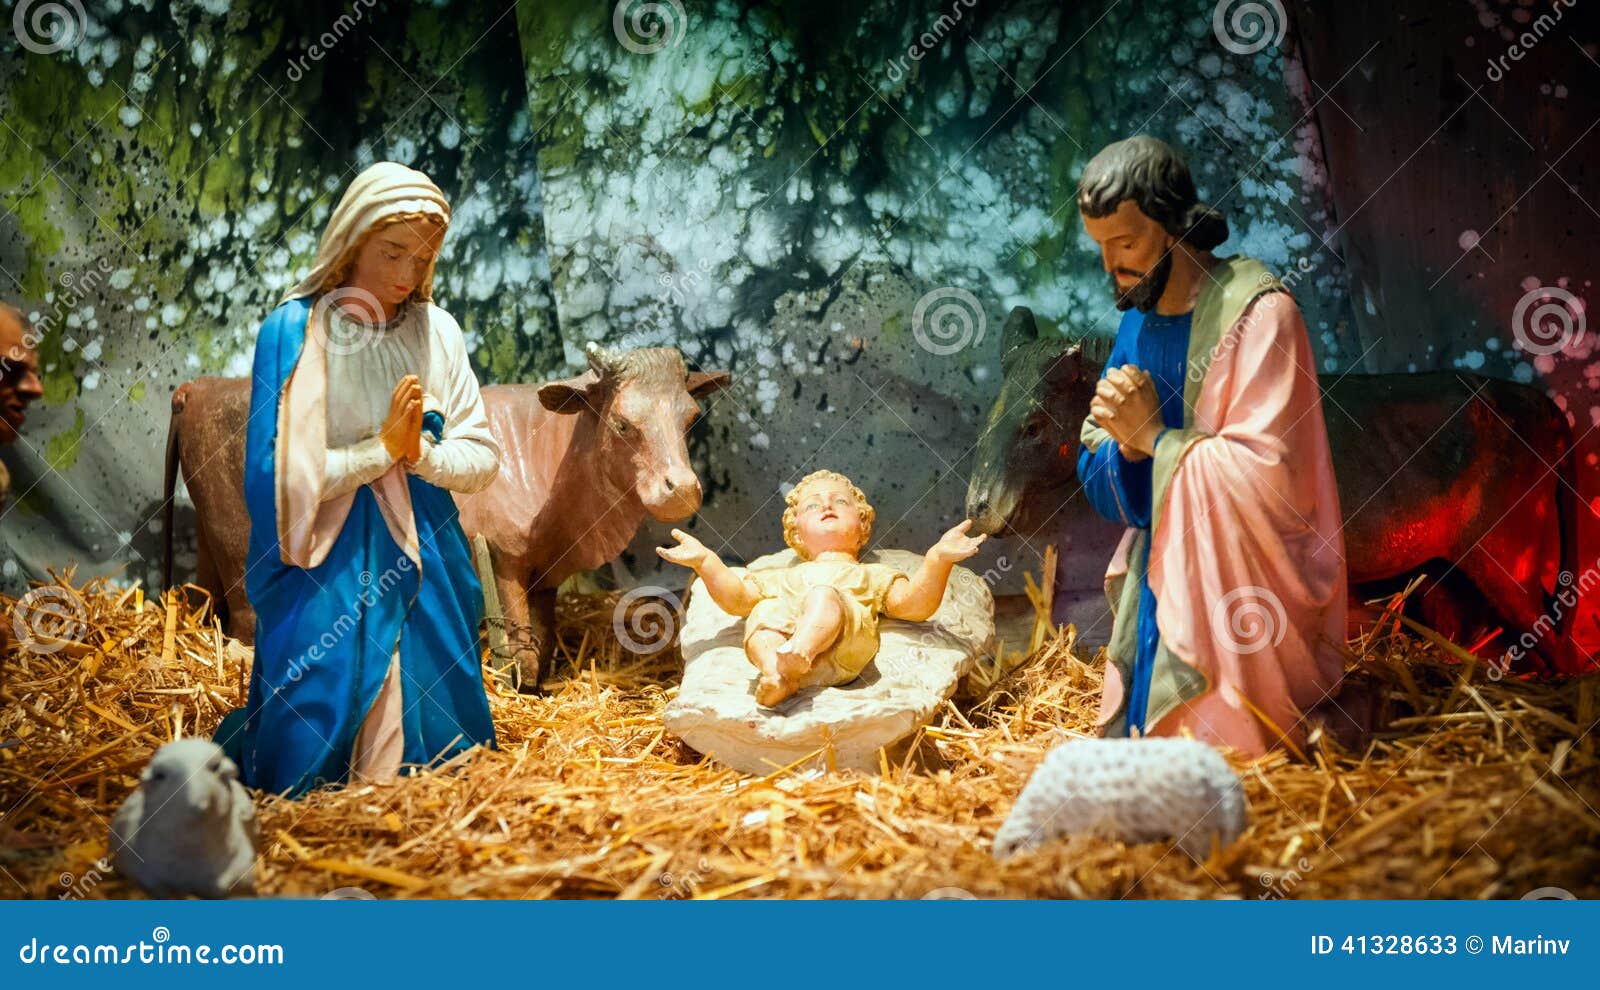 39,271 Christmas Jesus Stock Photos - Free & Royalty-Free Stock ...